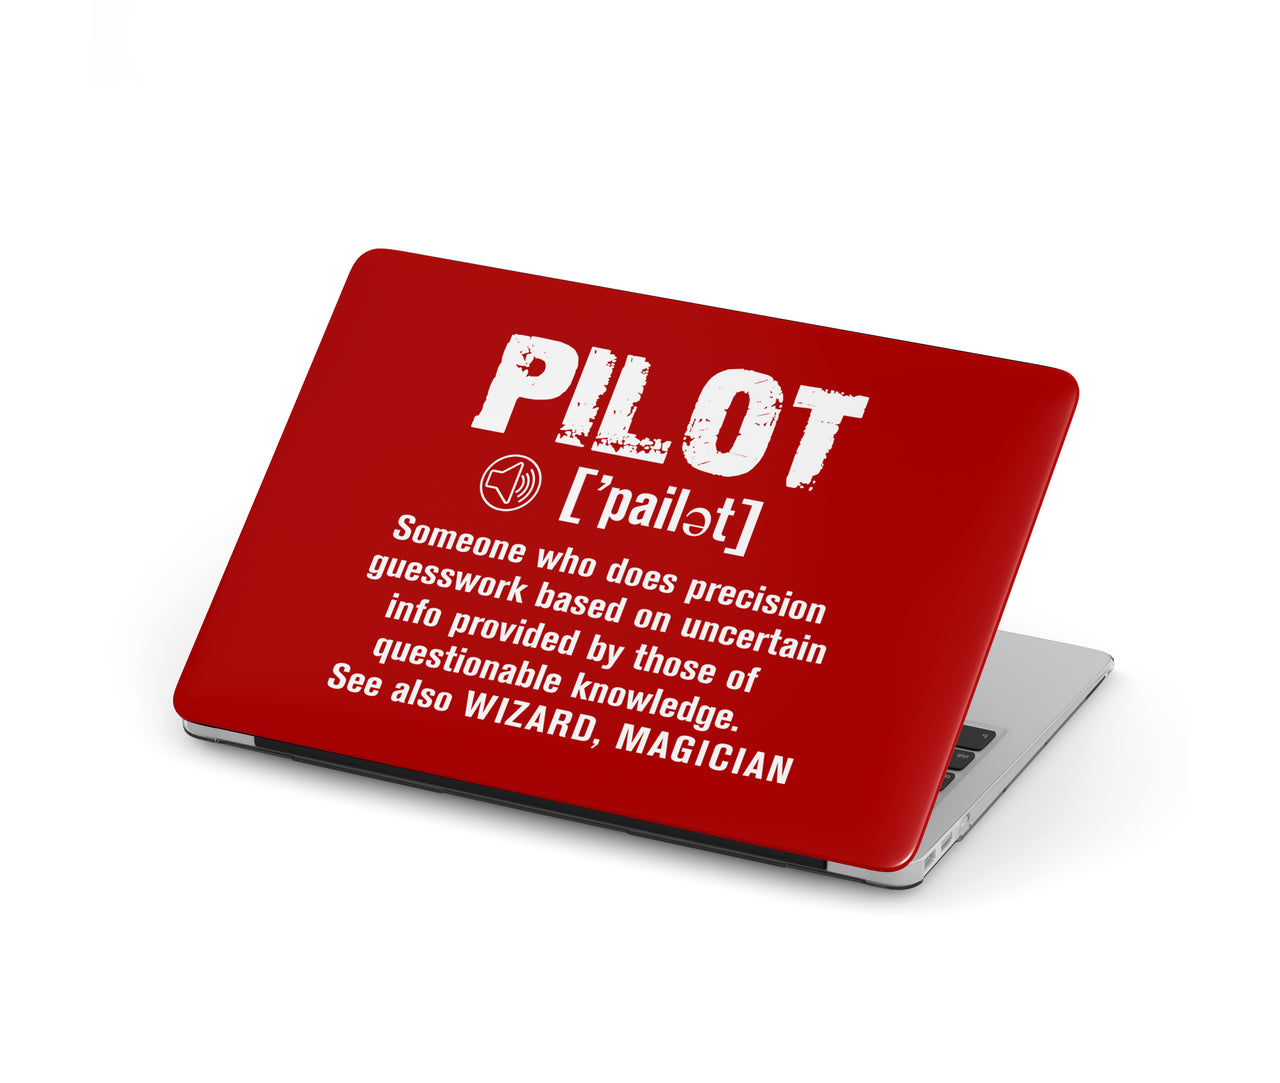 Pilot [Noun] Designed Macbook Cases